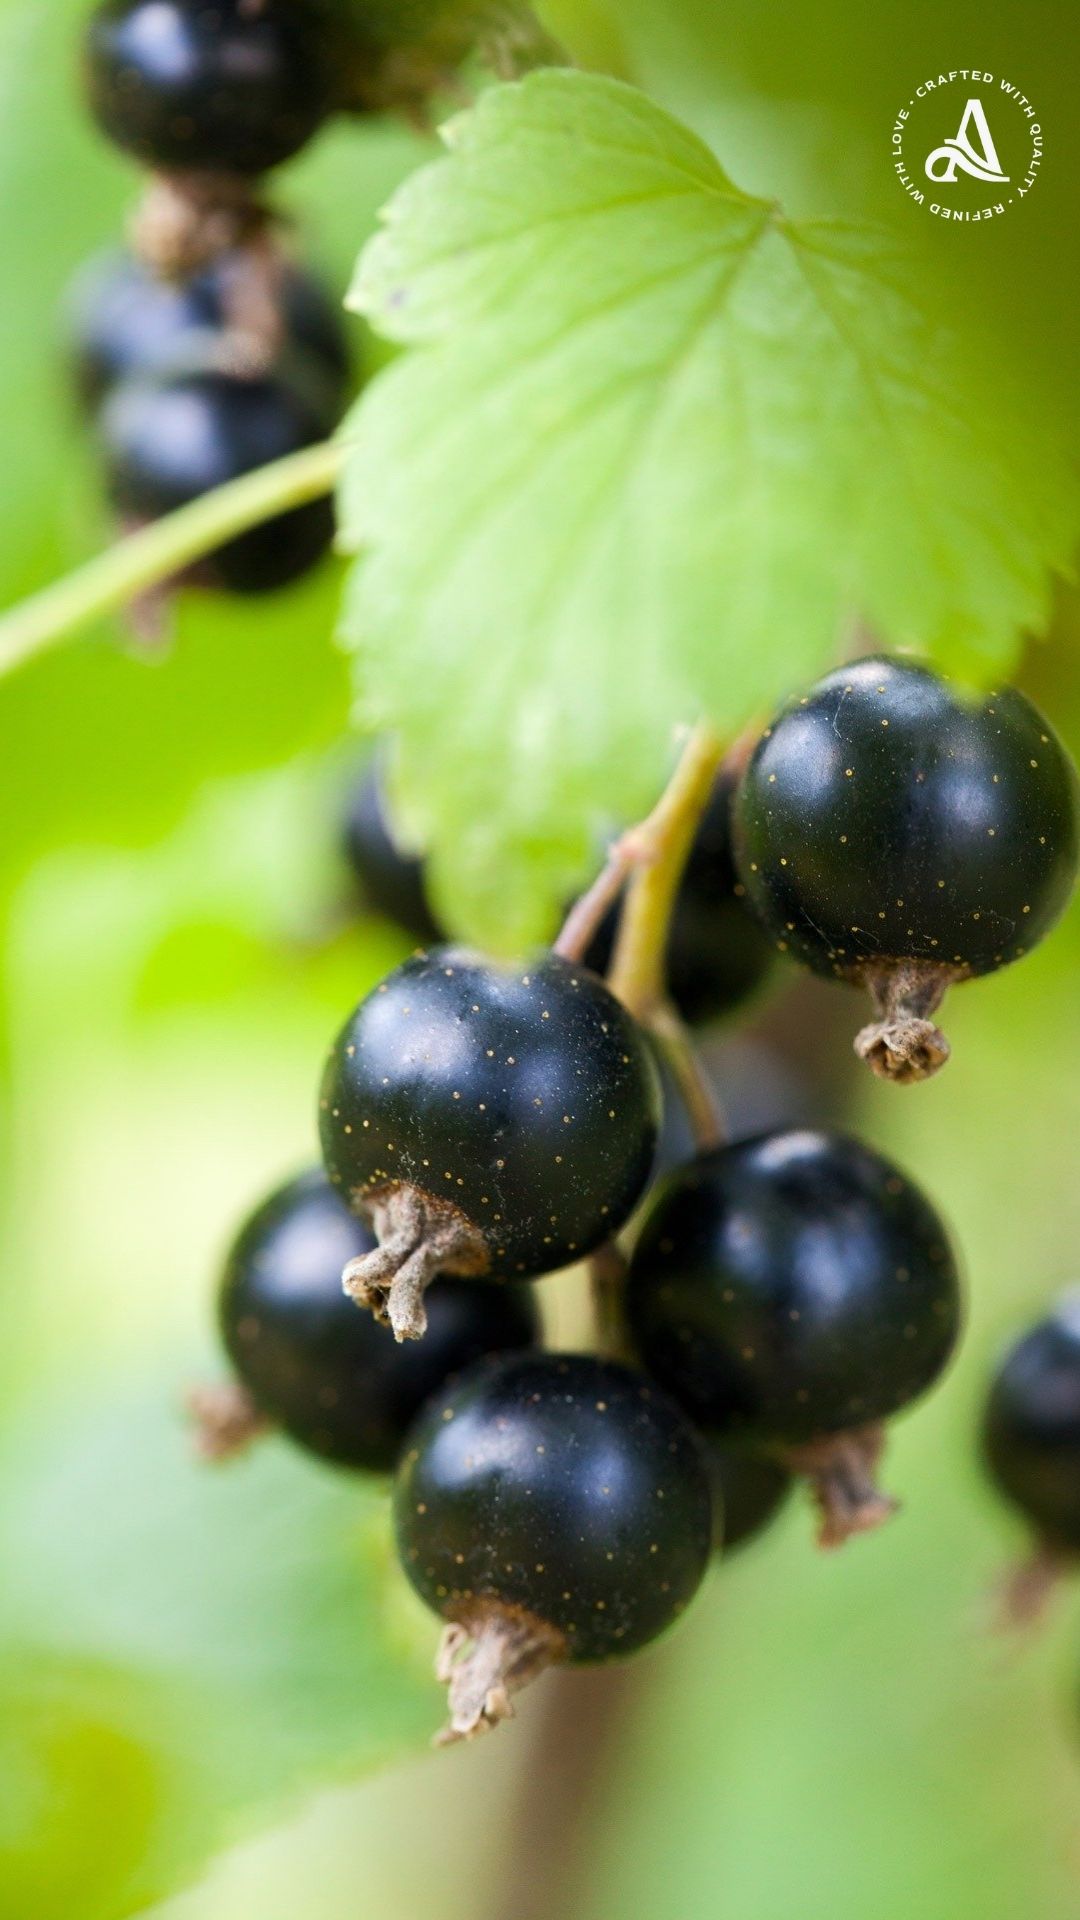 Chồi Lý chua đen (Blackcurrant) từ vùng rượu vang Burgundy Pháp